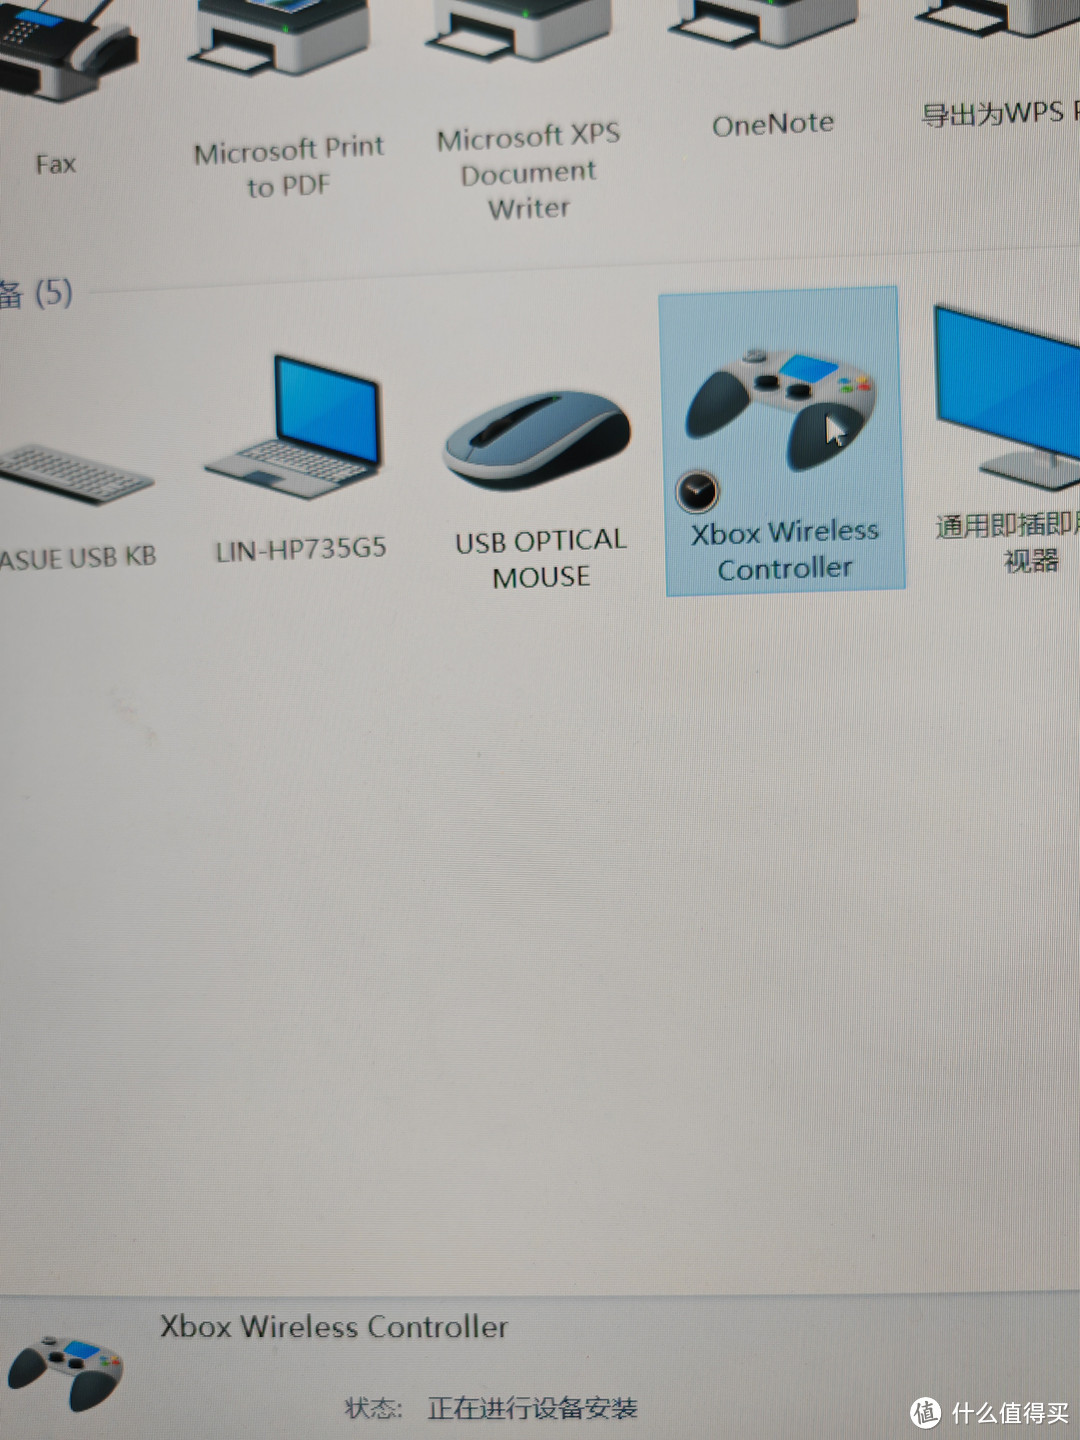 破电脑依旧是win10，每次连都要显示安装设备，连接时认证的是xbox手柄，和我的Xbox手柄名字一样，不知道是不是授权的。